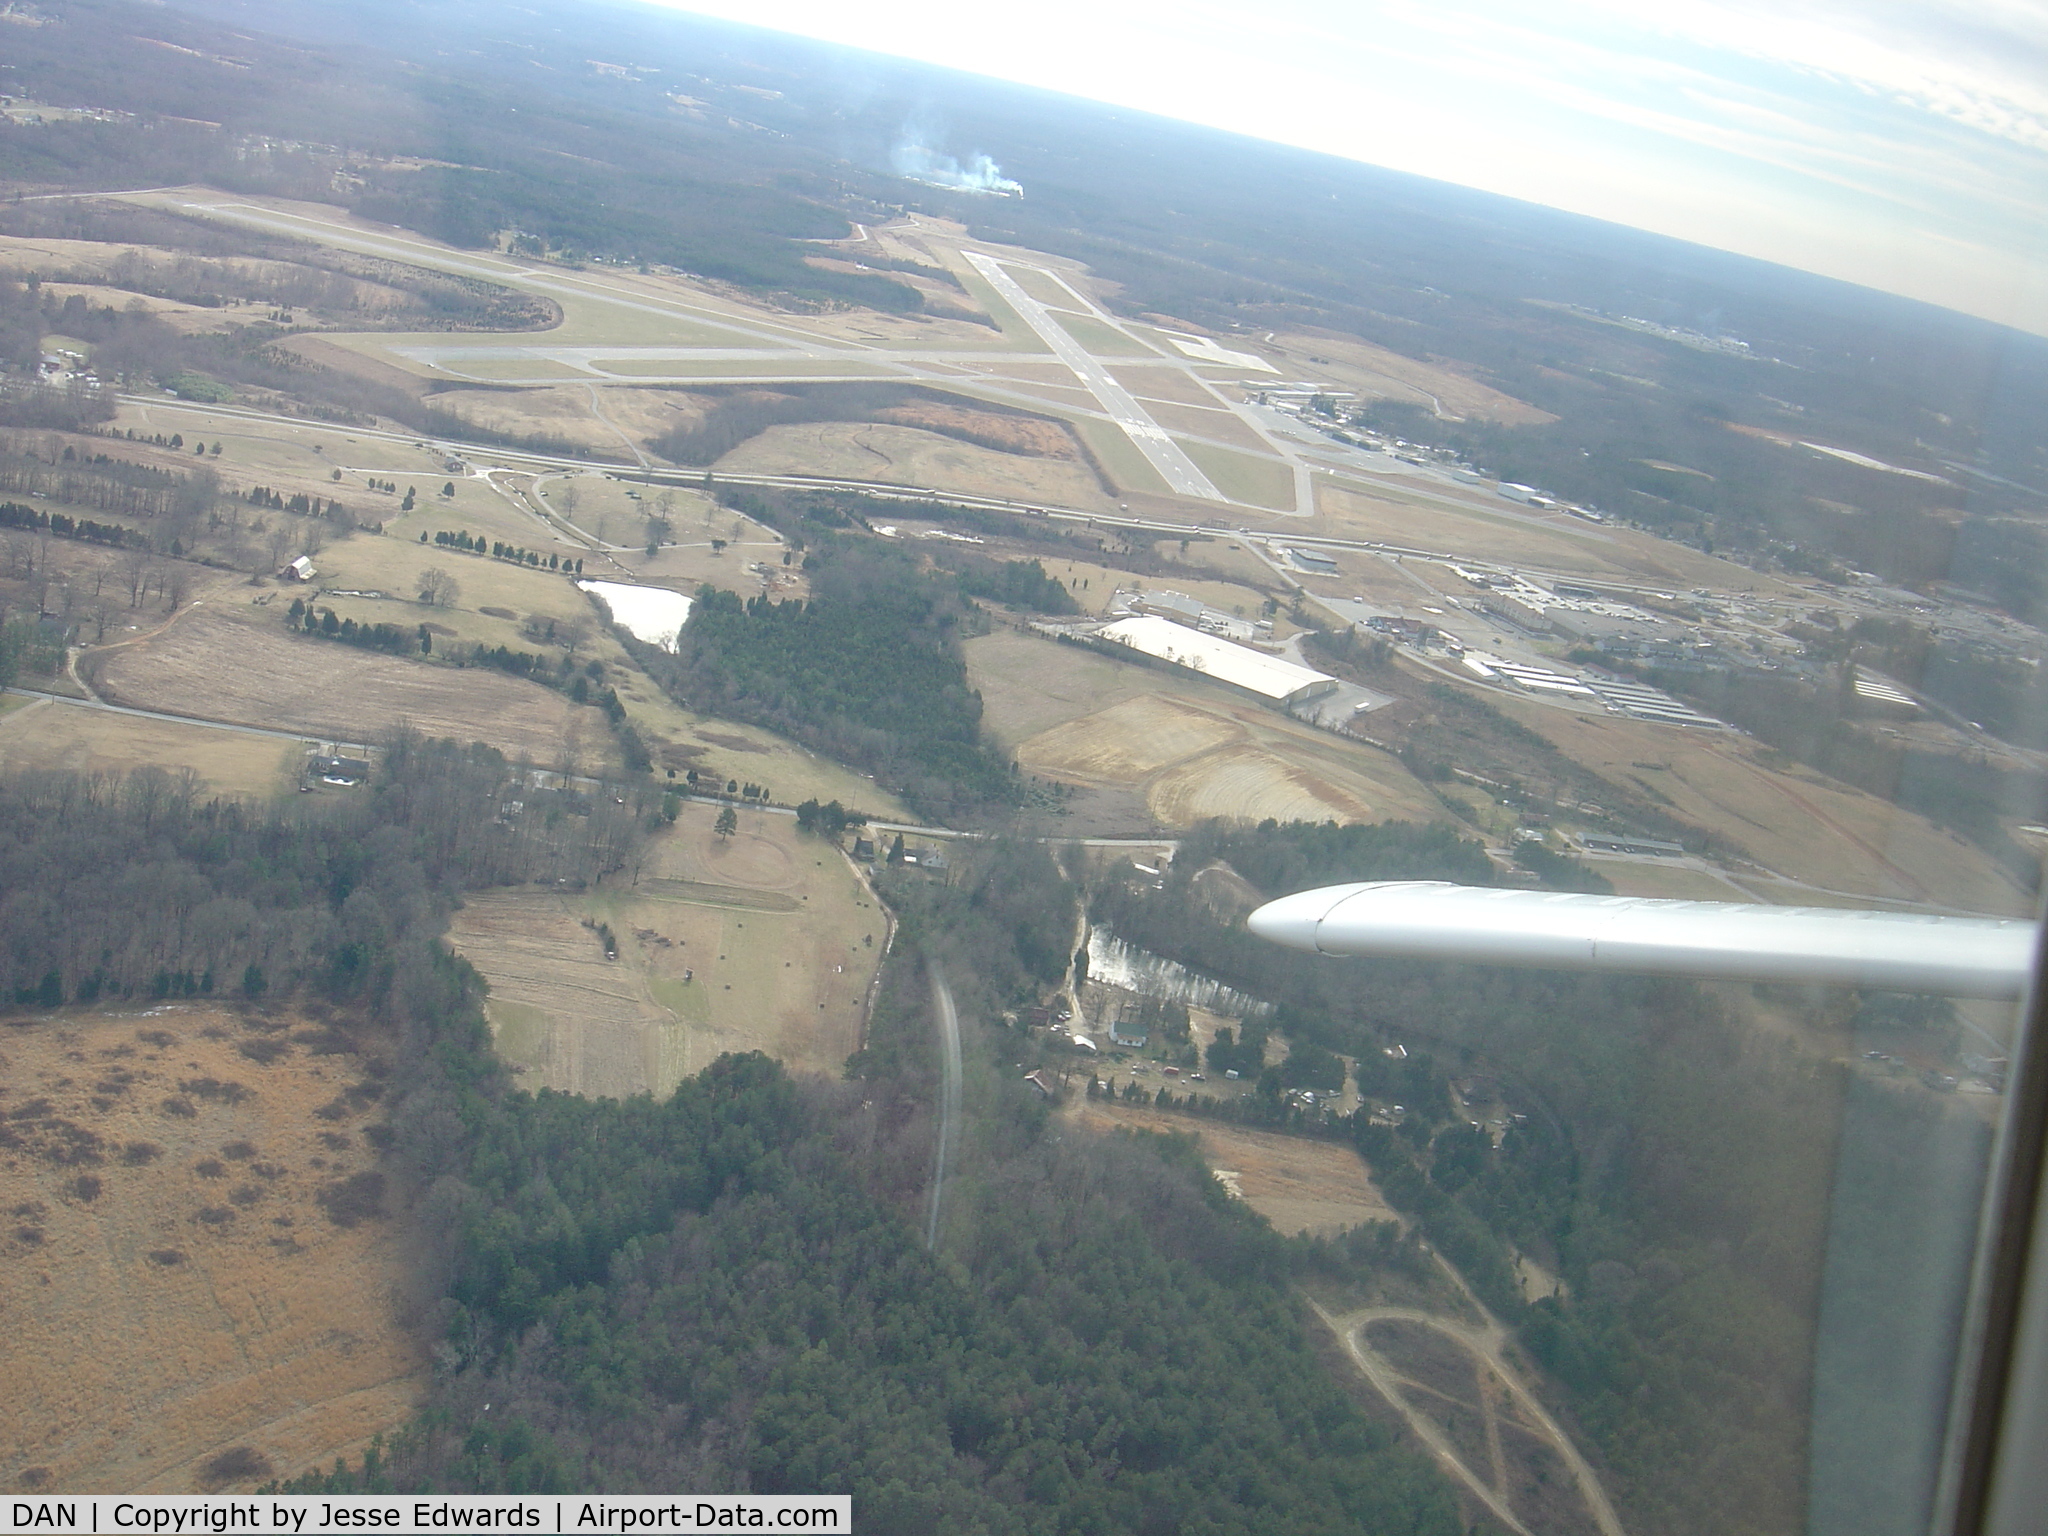 Danville Regional Airport (DAN) - Departing runway 2